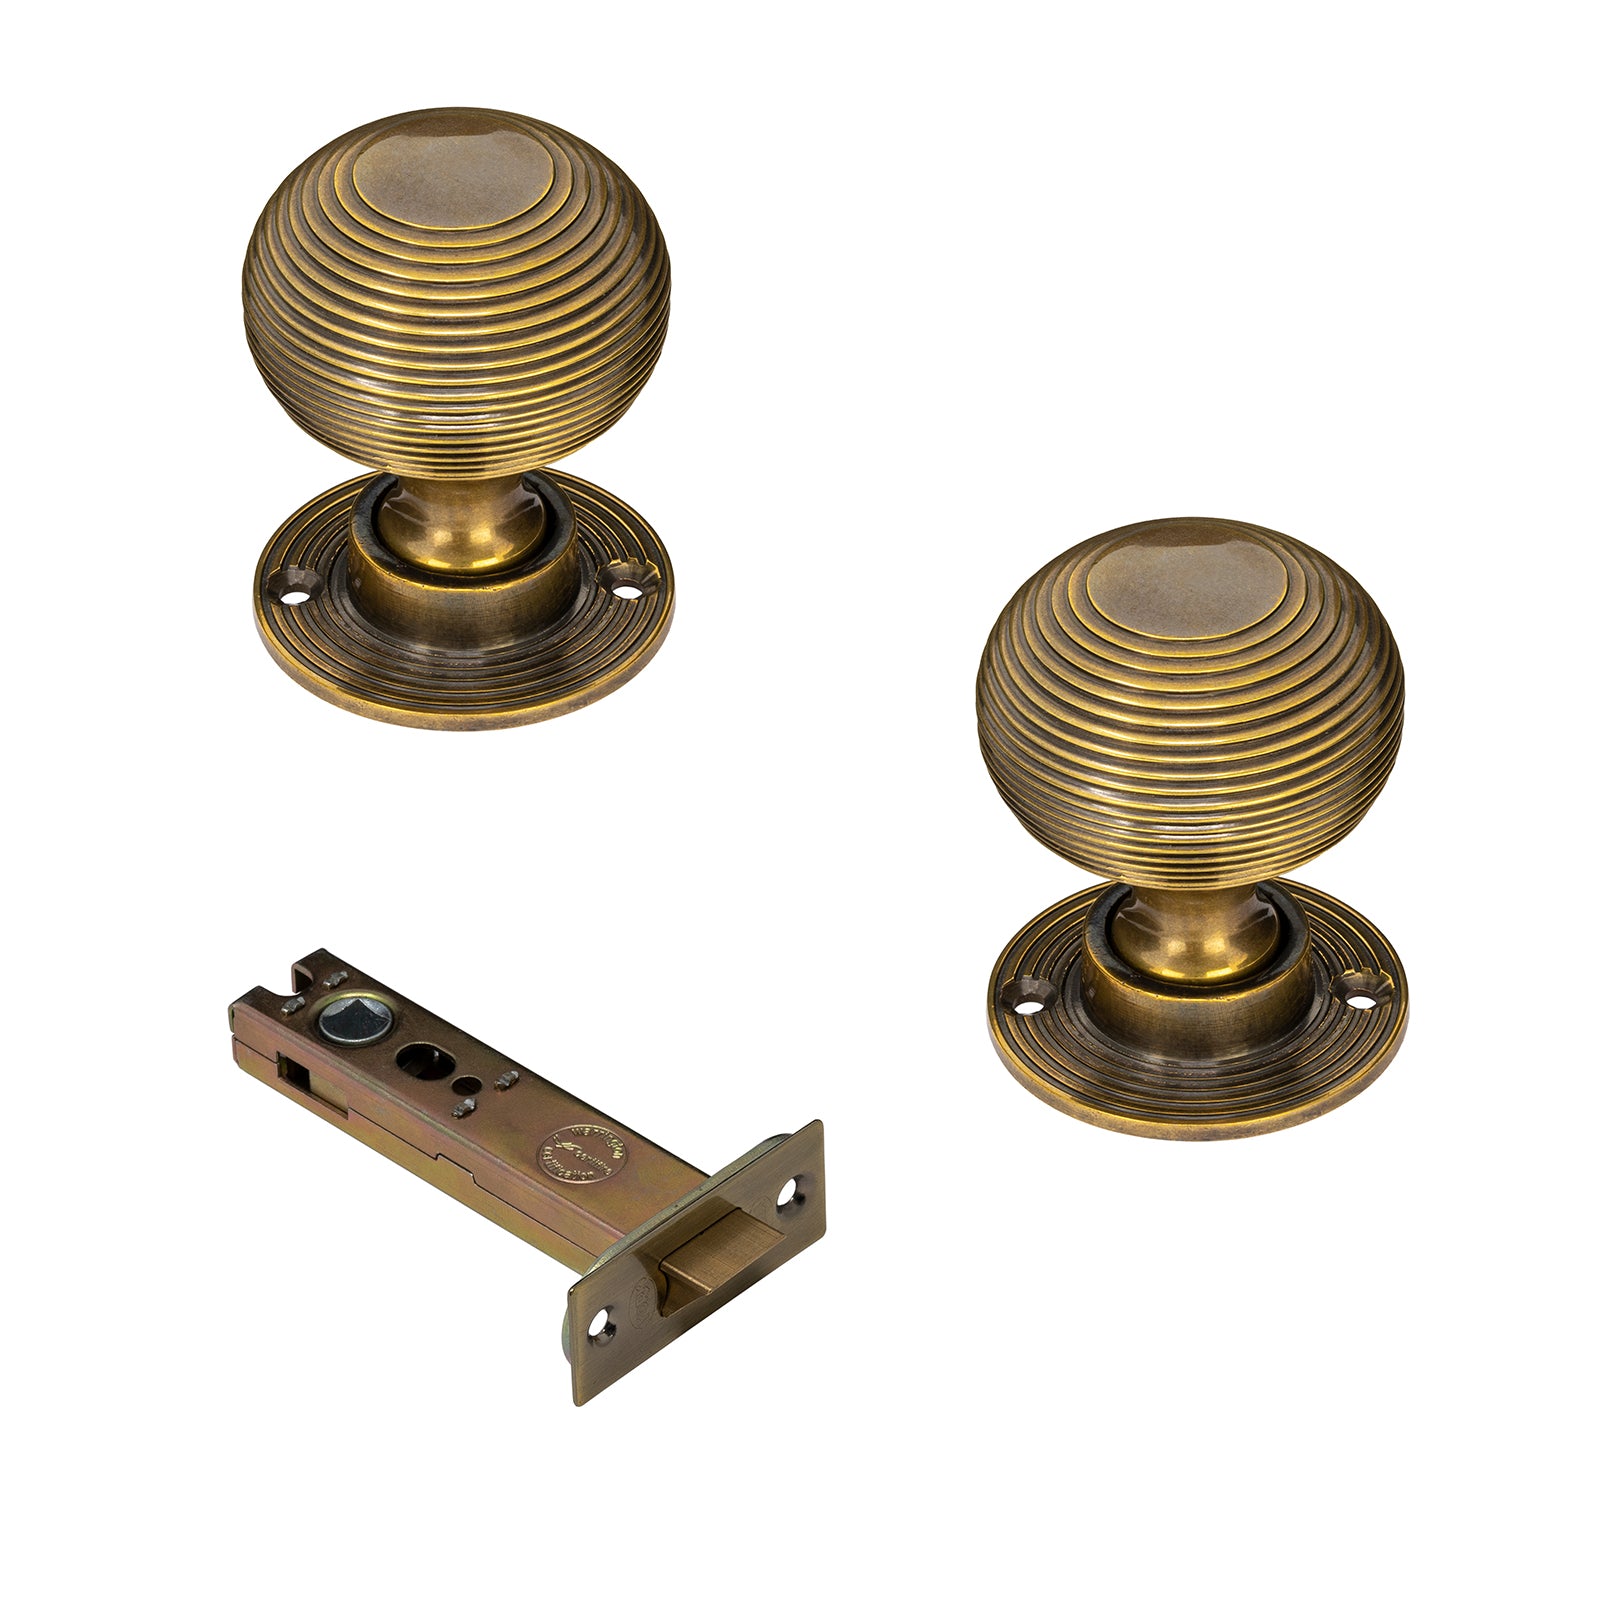 Antique brass beehive door knob 4 inch latch set